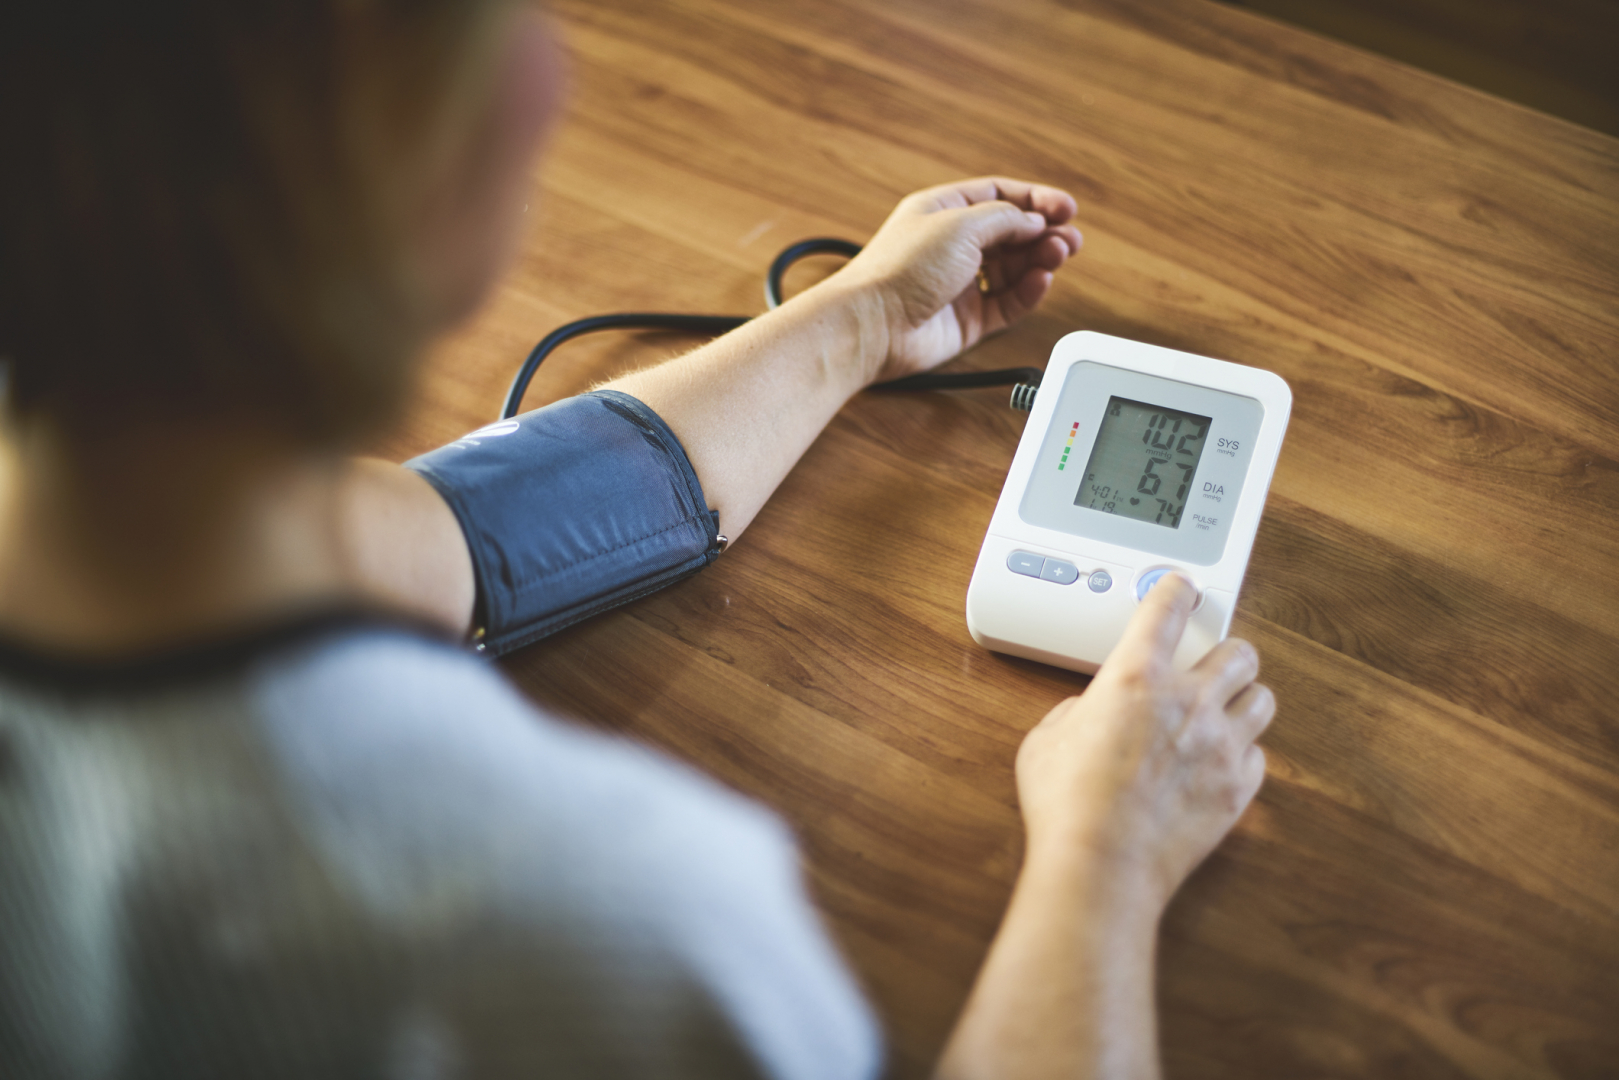  Mit jelentenek a vérnyomásértékek?